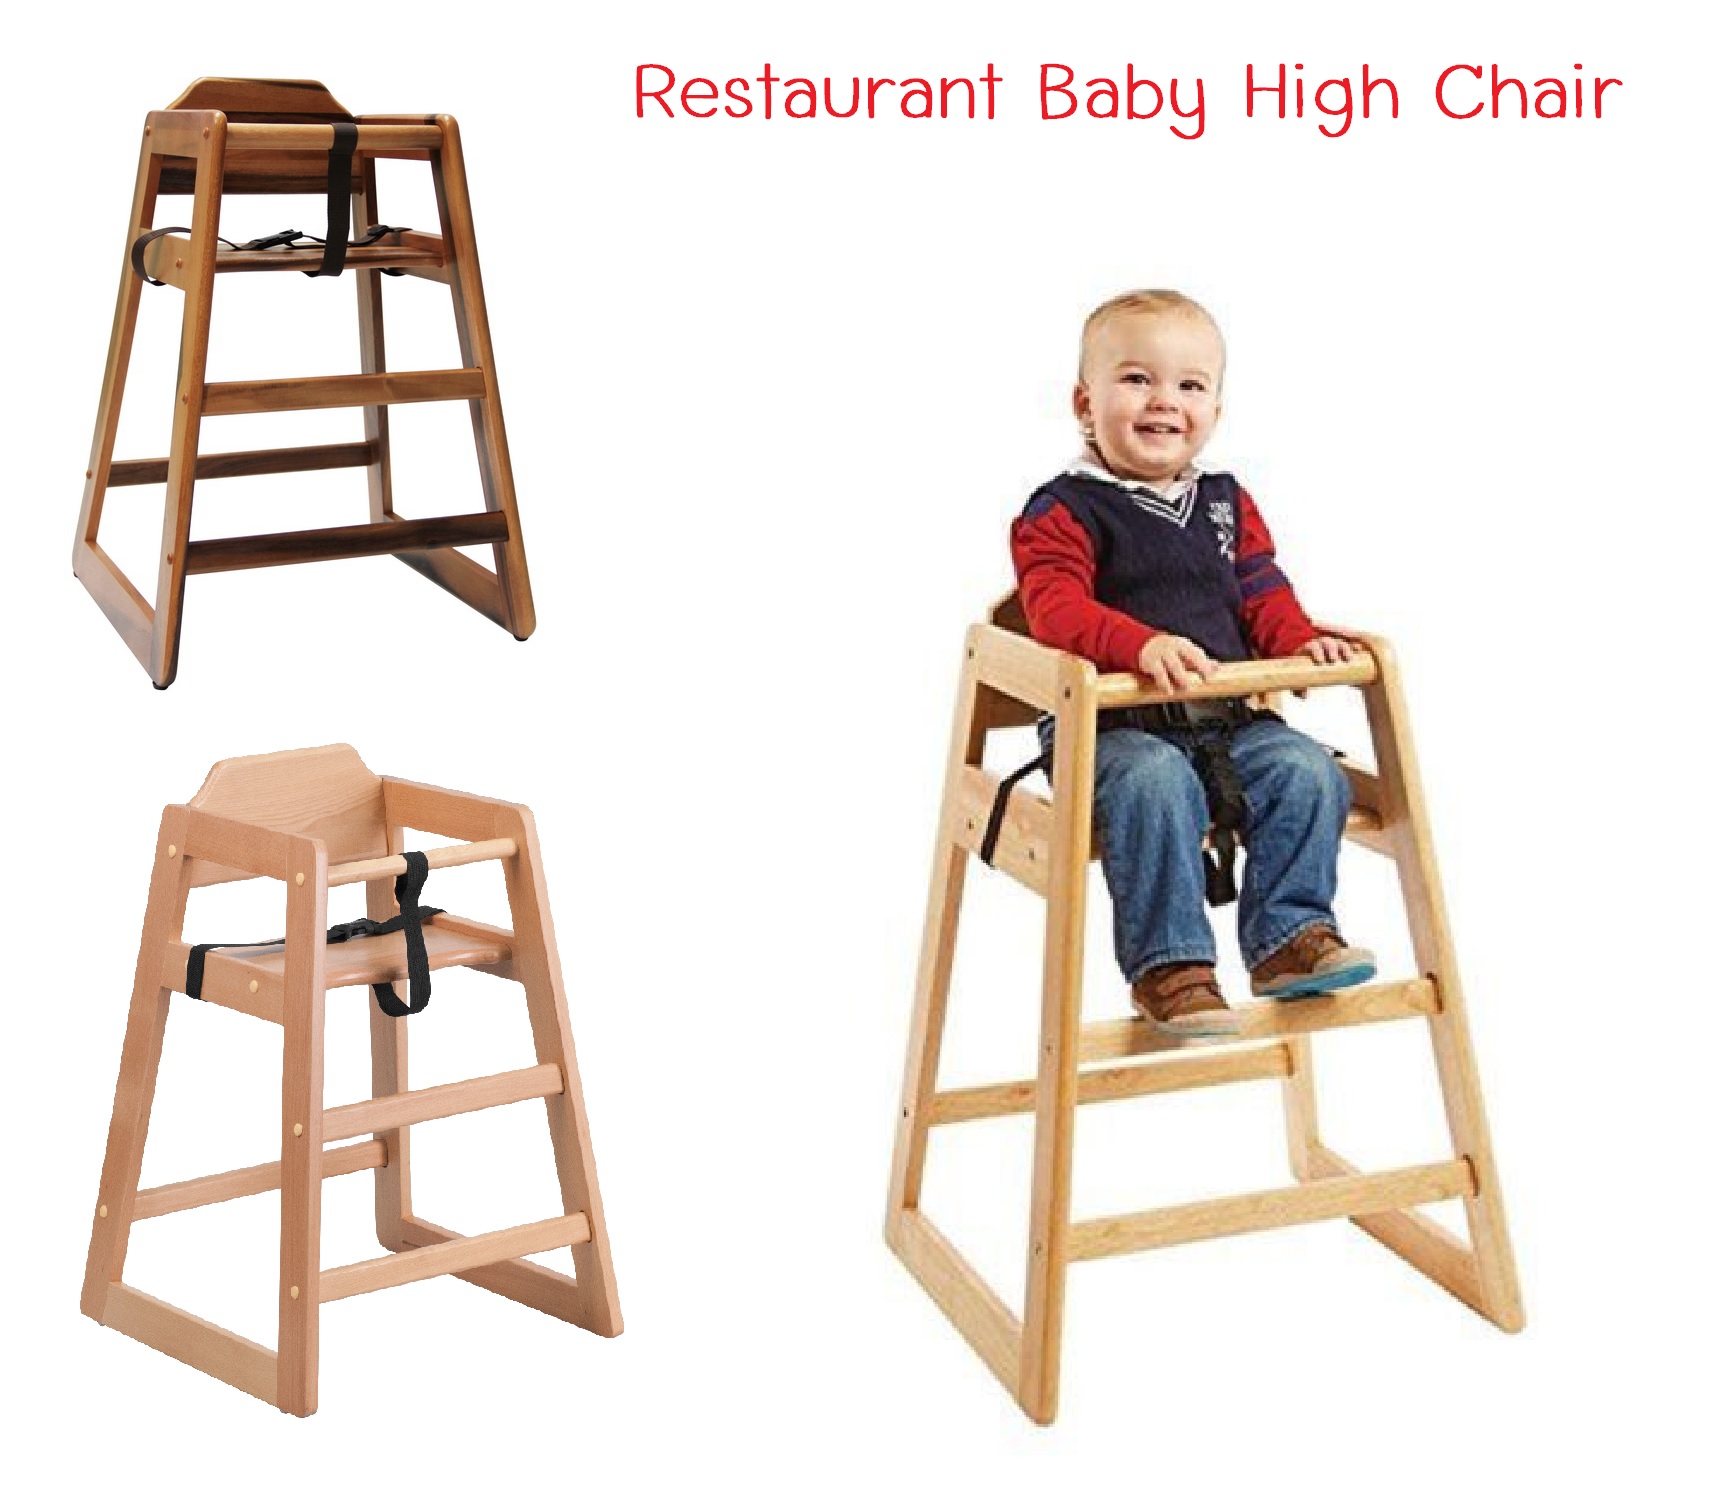 เก้าอี้เด็ก,เก้าอี้เด็กทานข้าว,เก้าอี้ไม้ทานข้าว,เก้าอี้เด็กไม้,เก้าอี้ทานข้าวเด็กไม้ Stackable Baby High Chair,Wood